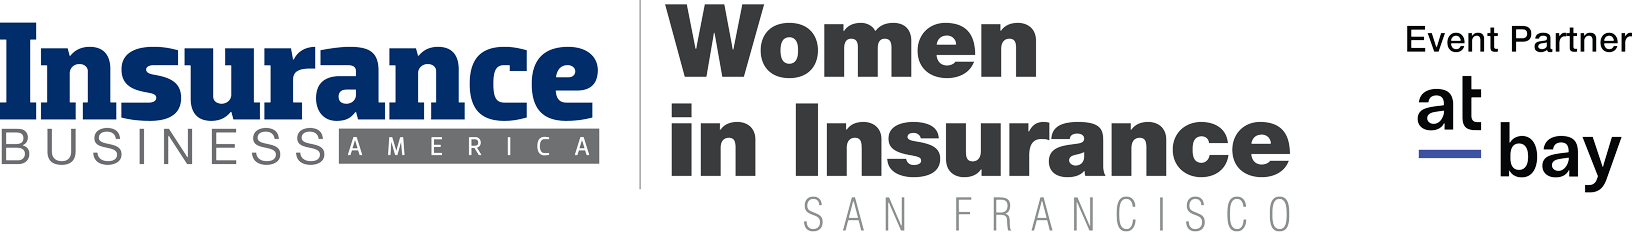 Women in Insurance NY Logo